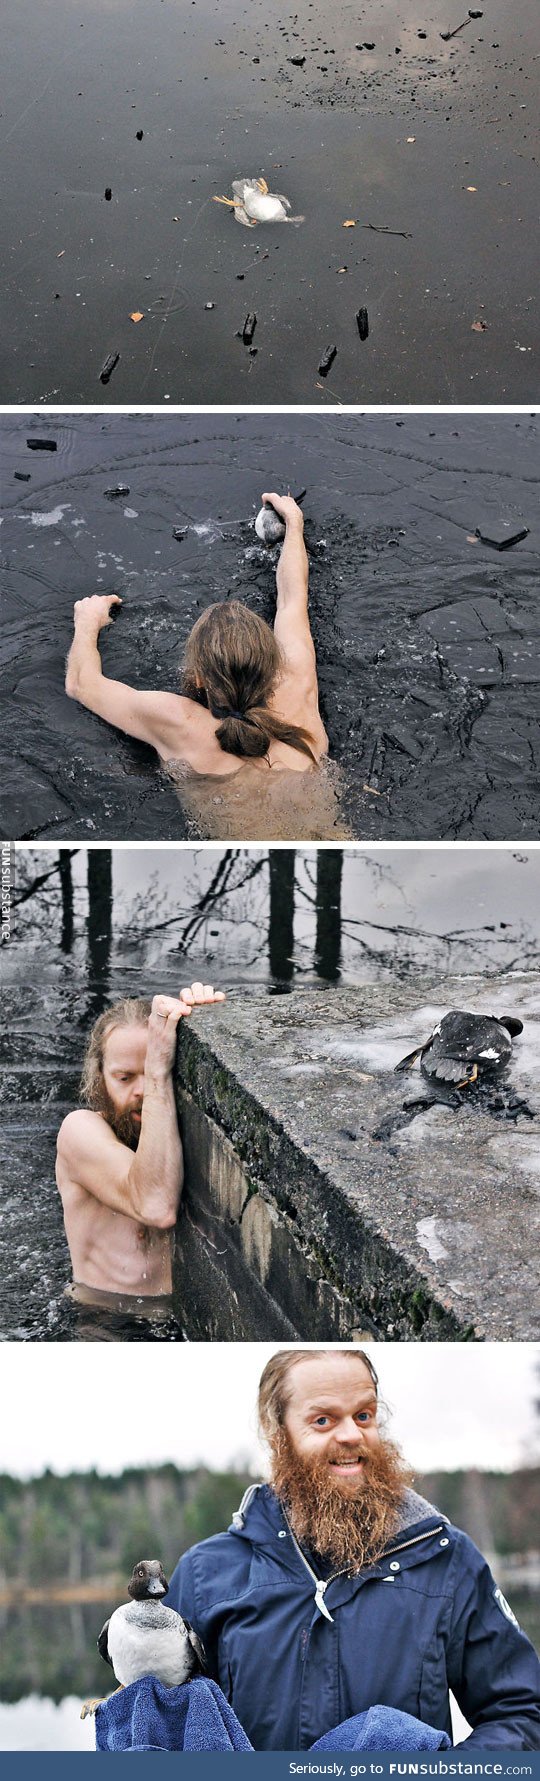 Norwegian man saves a duck